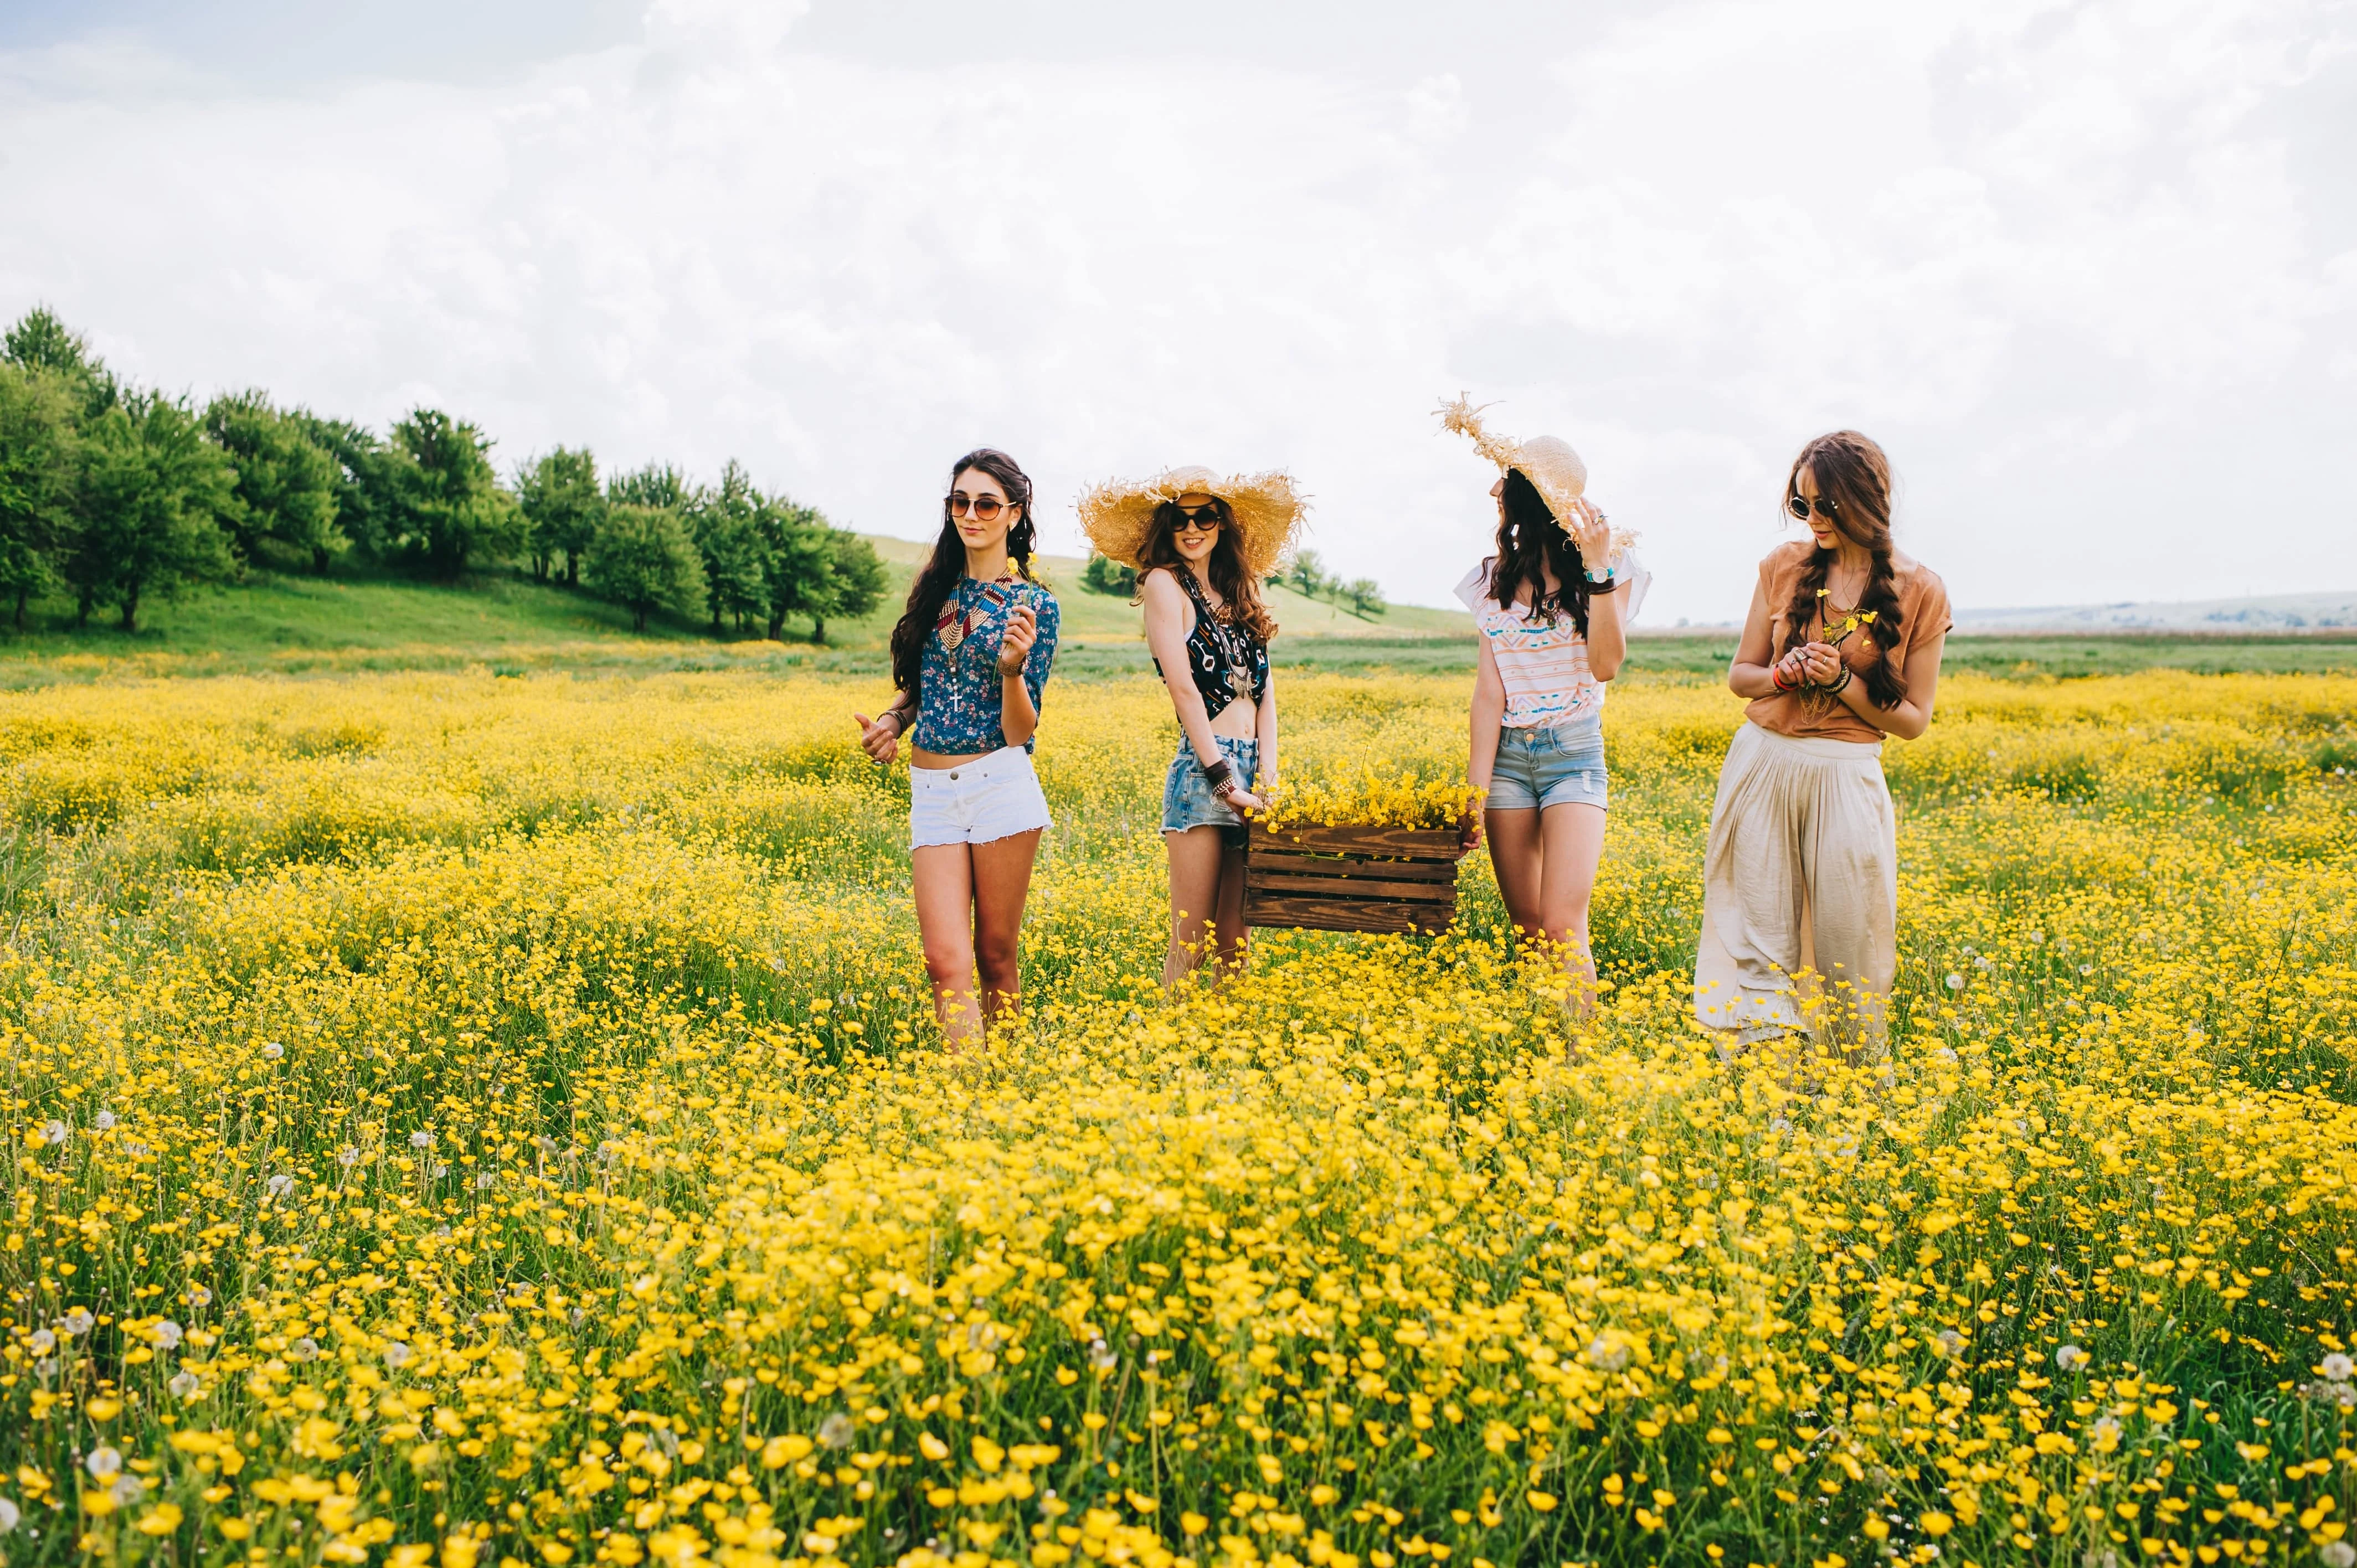 Four women walking in a field of yellow flowers